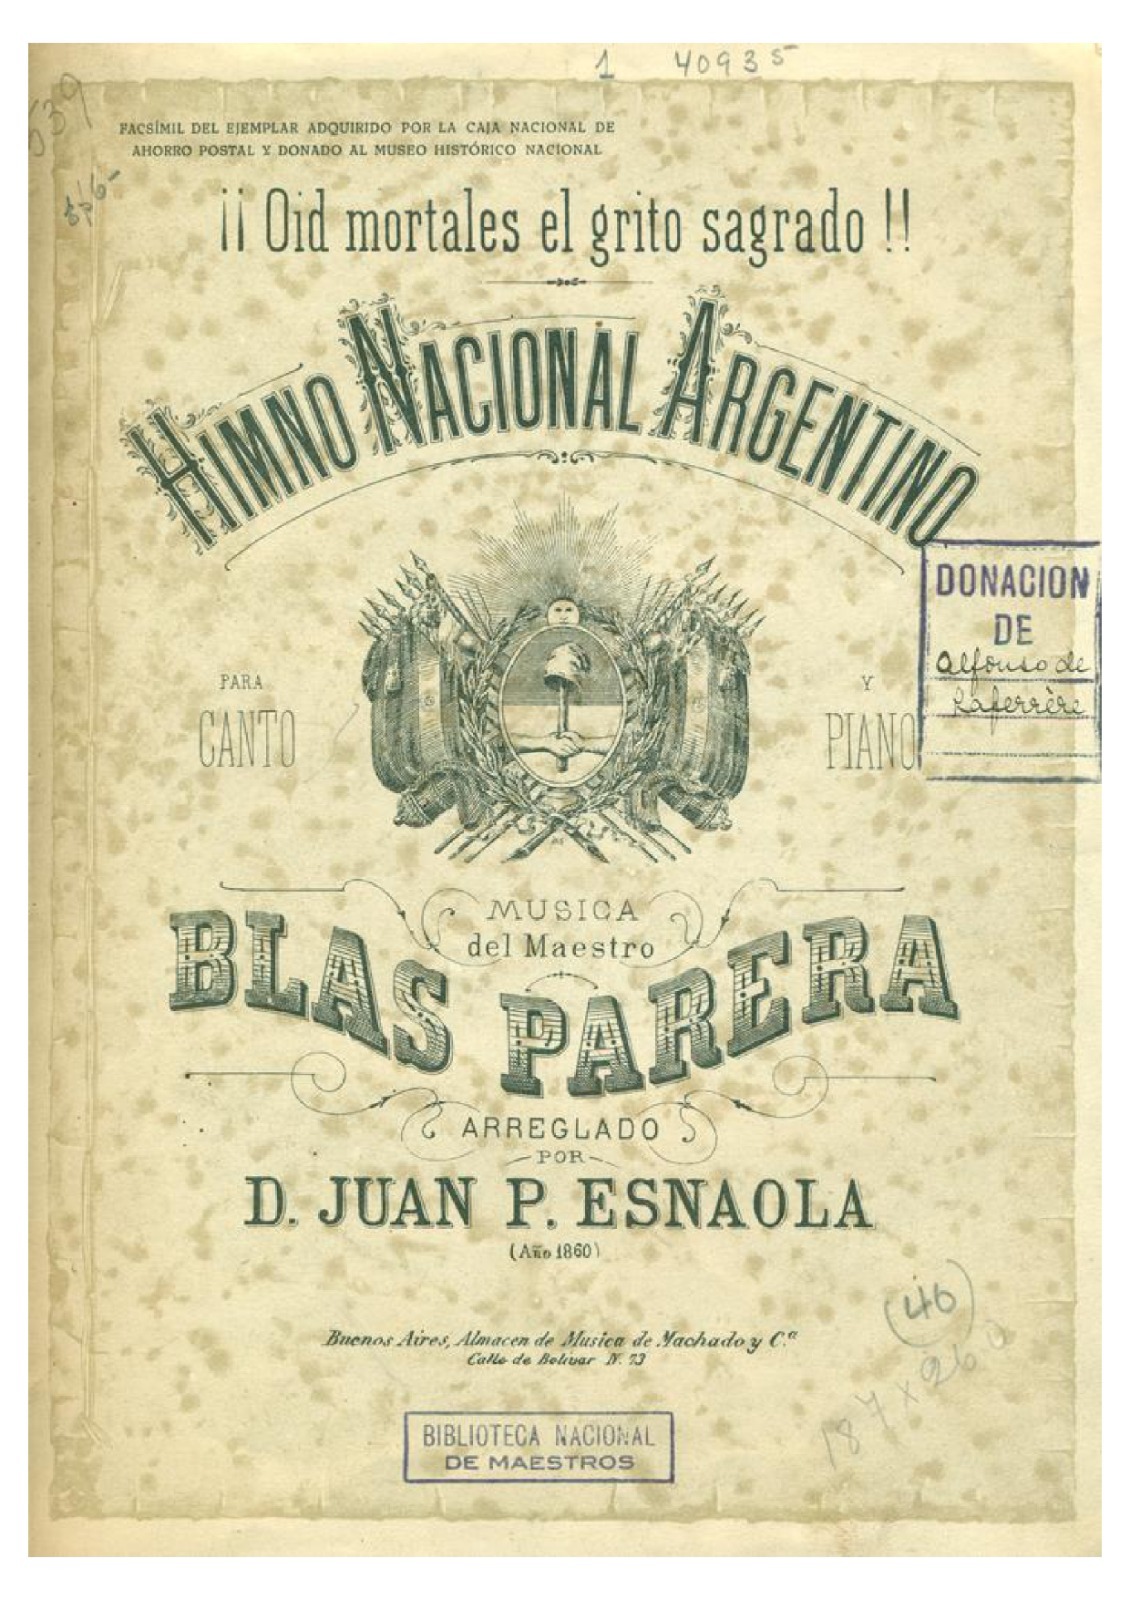 A 211 años de la creación del Himno Nacional Argentino, uno de los símbolos patrios más reconocidos de nuestro país